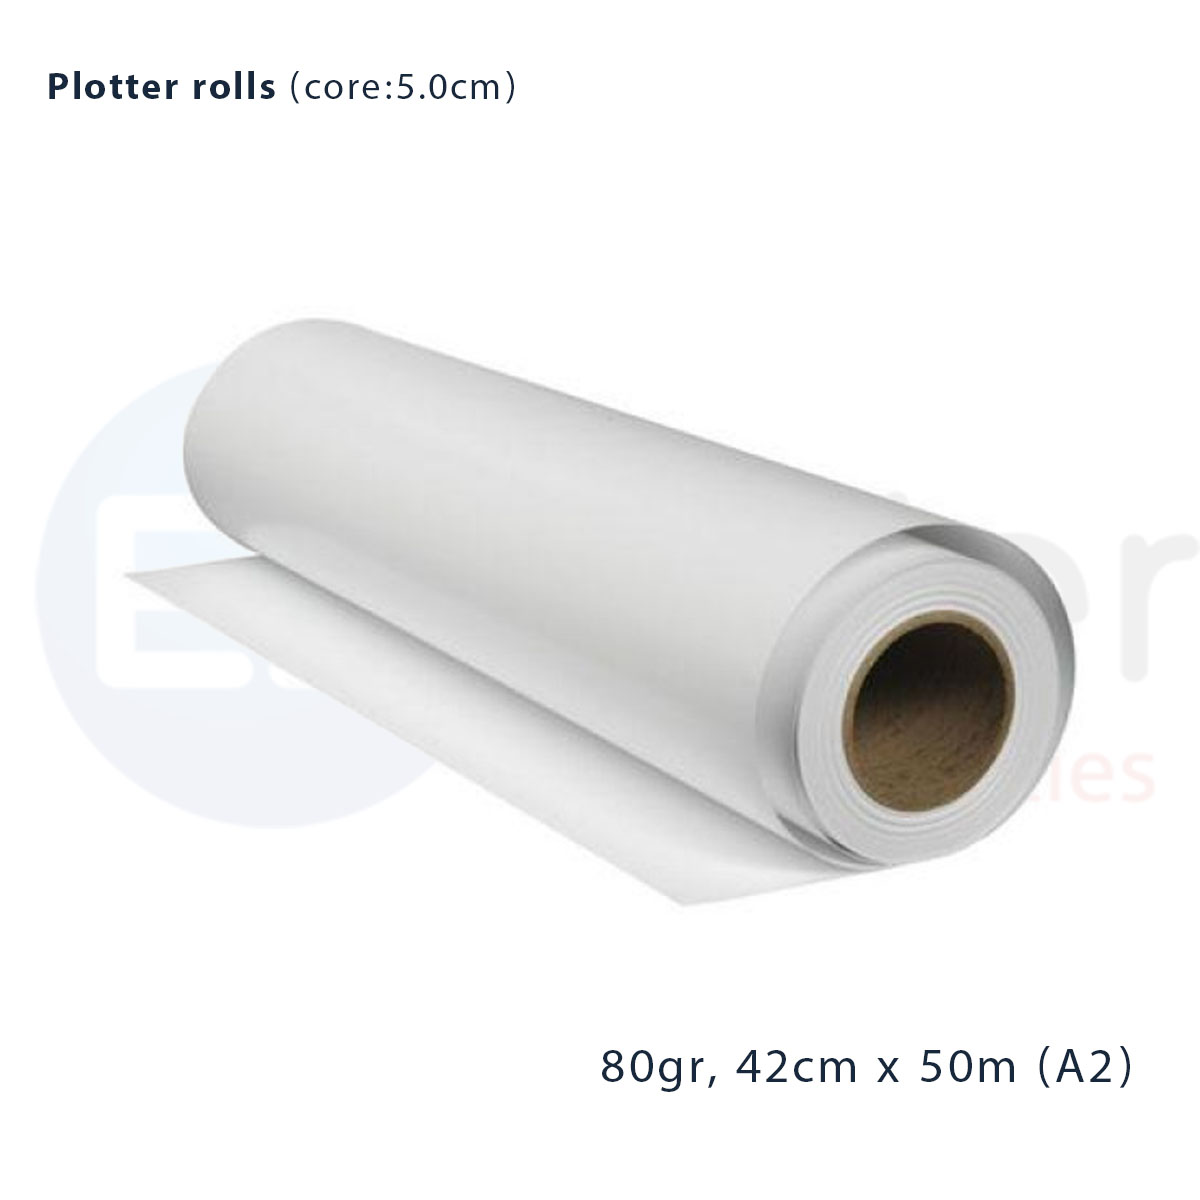 +Plotter roll A2, 5cm core, 42cmx50m, 80gr